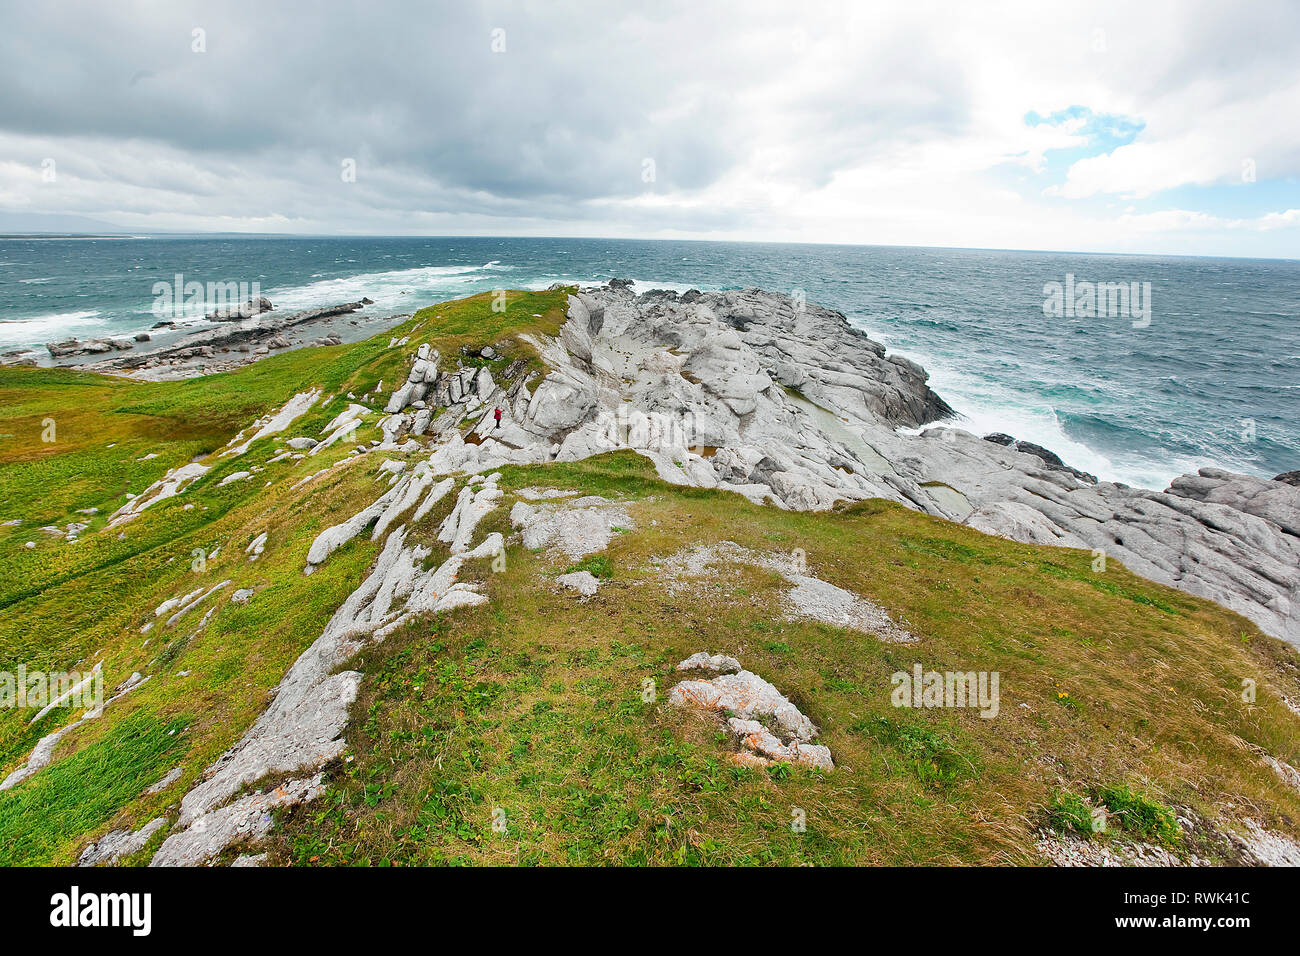 Cambrian et Ordovicia rock formations ère s'étendant dans le golfe du Saint-Laurent à l'extrémité sud-ouest du sentier du phare sur la péninsule de Cow Head, Cow Head, dans l'ouest de Terre-Neuve, Canada Banque D'Images